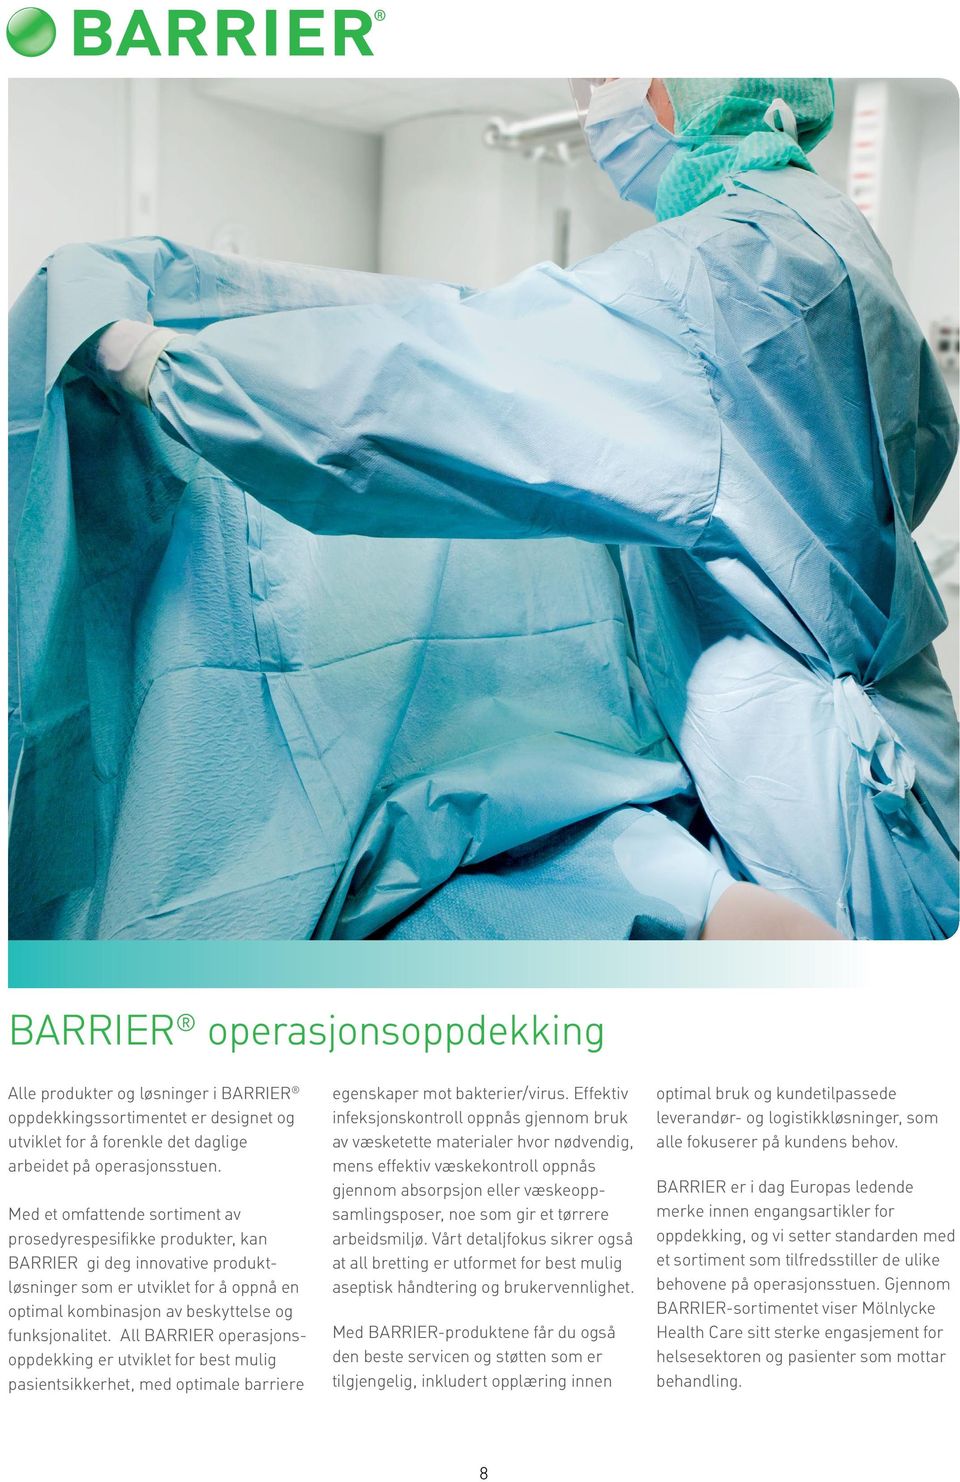 All BARRIER operasjonsoppdekking er utviklet for best mulig pasientsikkerhet, med optimale barriere egenskaper mot bakterier/virus.